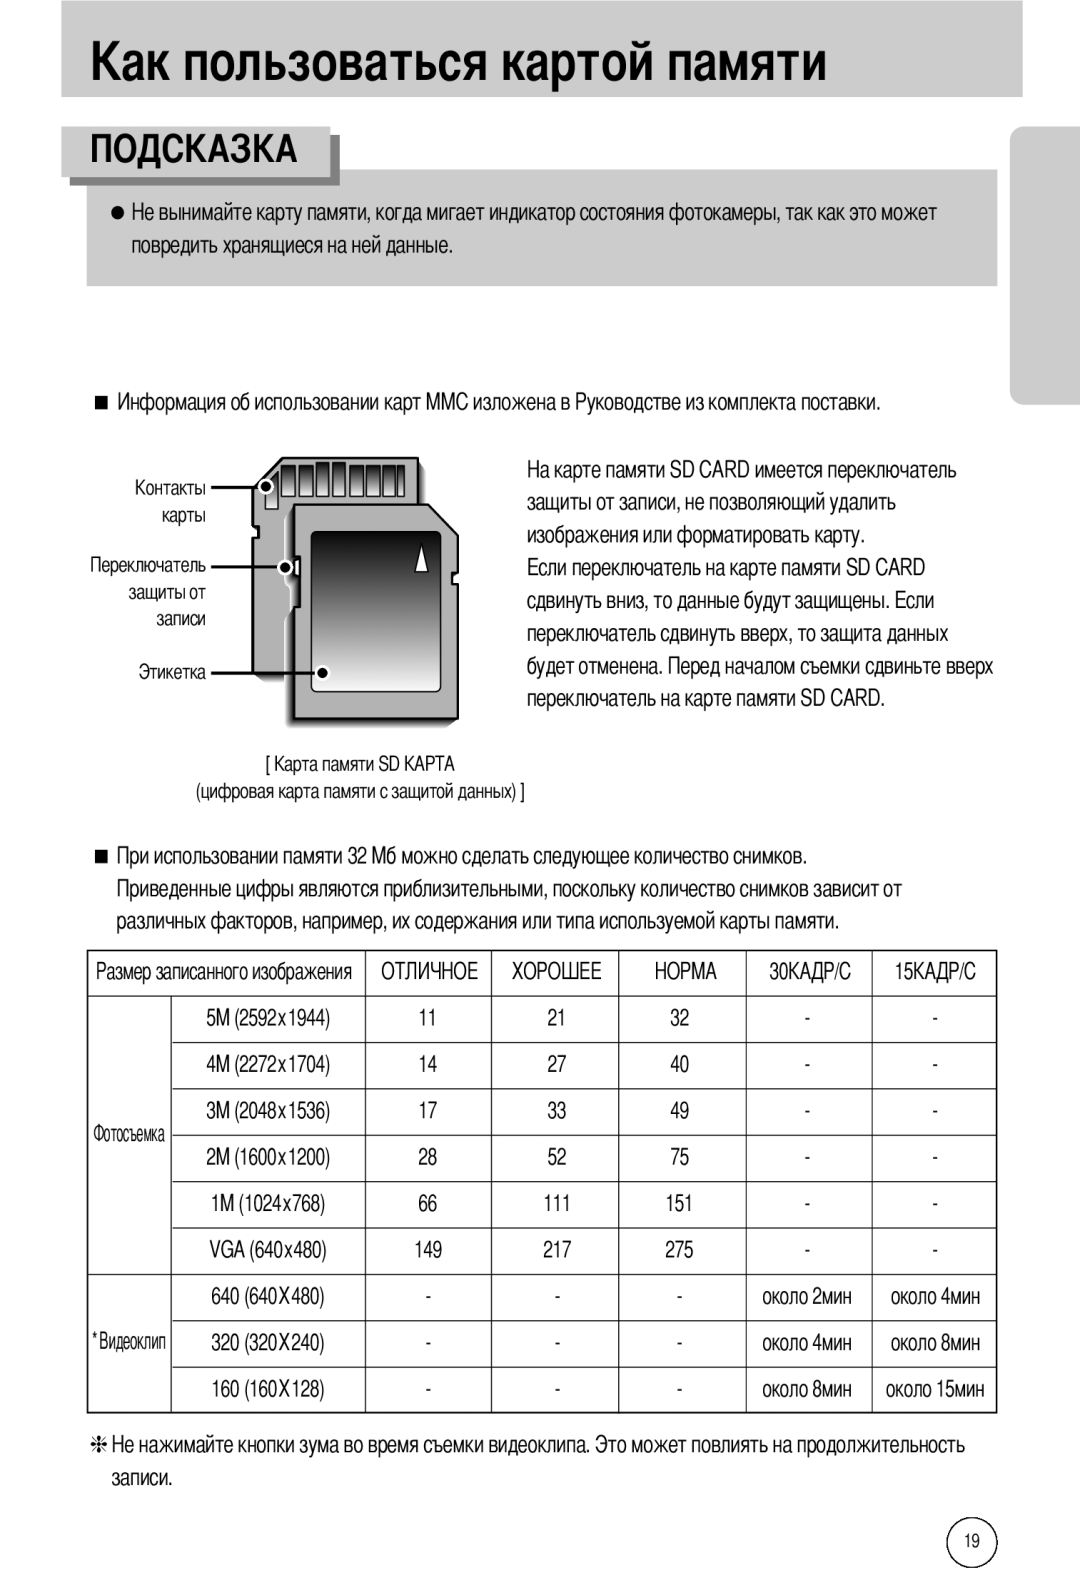 Samsung EC-I50ZZBBB/DE повредить хранящиеся на ней данные, переключатель на карте памяти SD CARD, записи, карты, Этикетка 